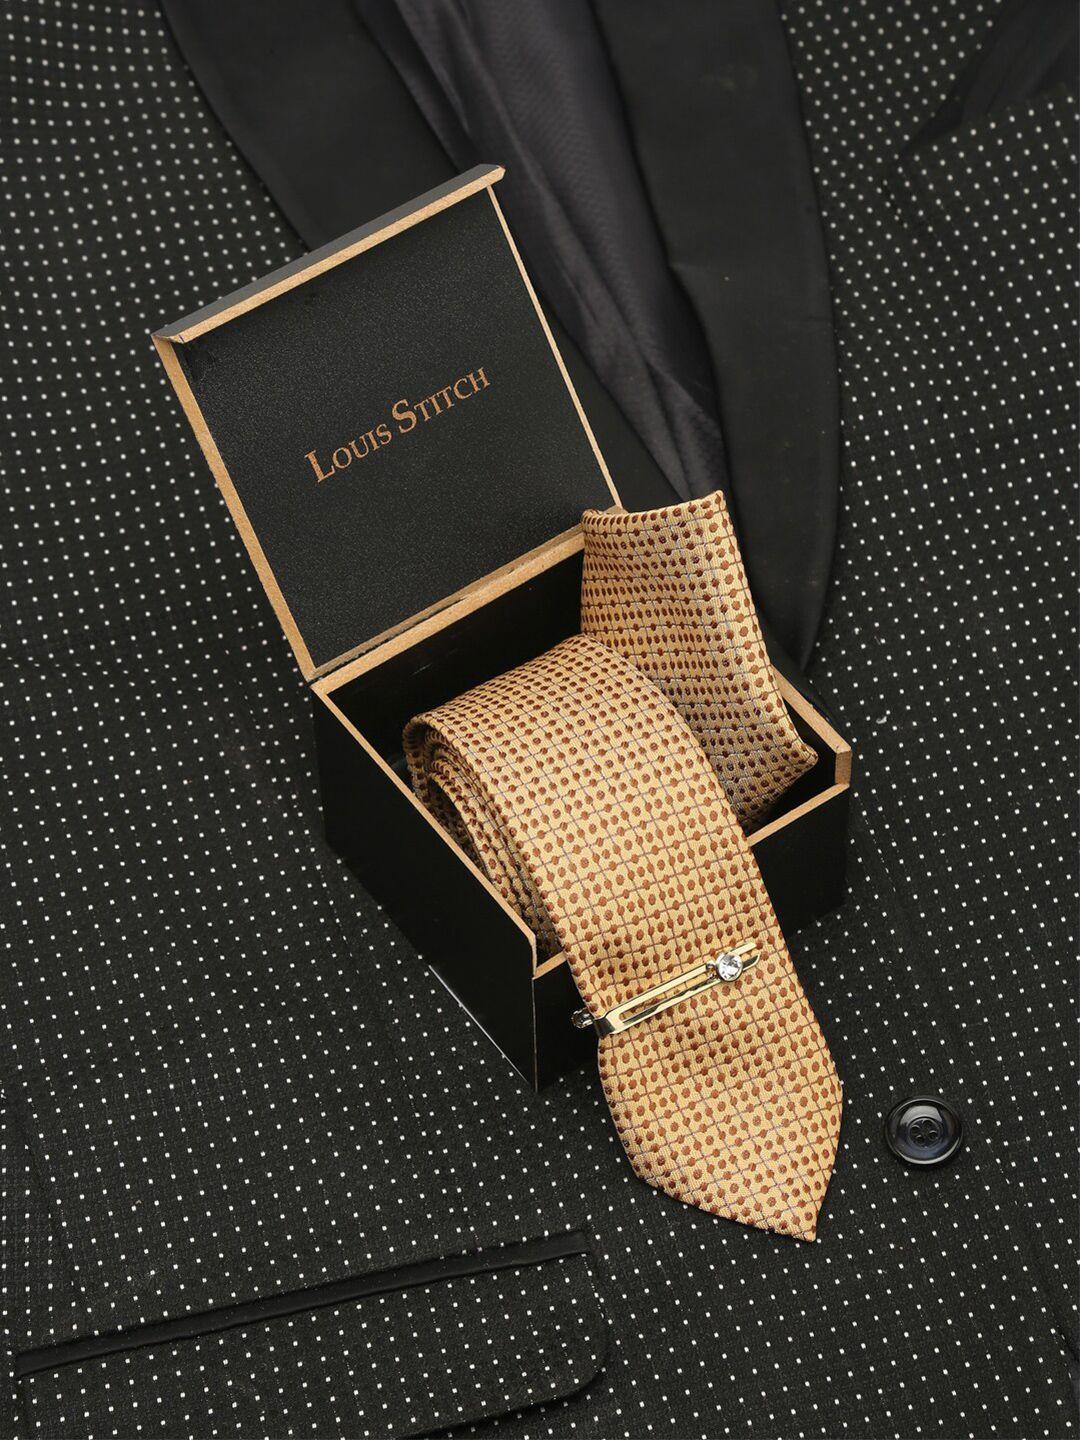 louis stitch men cream-coloured woven design broad tie